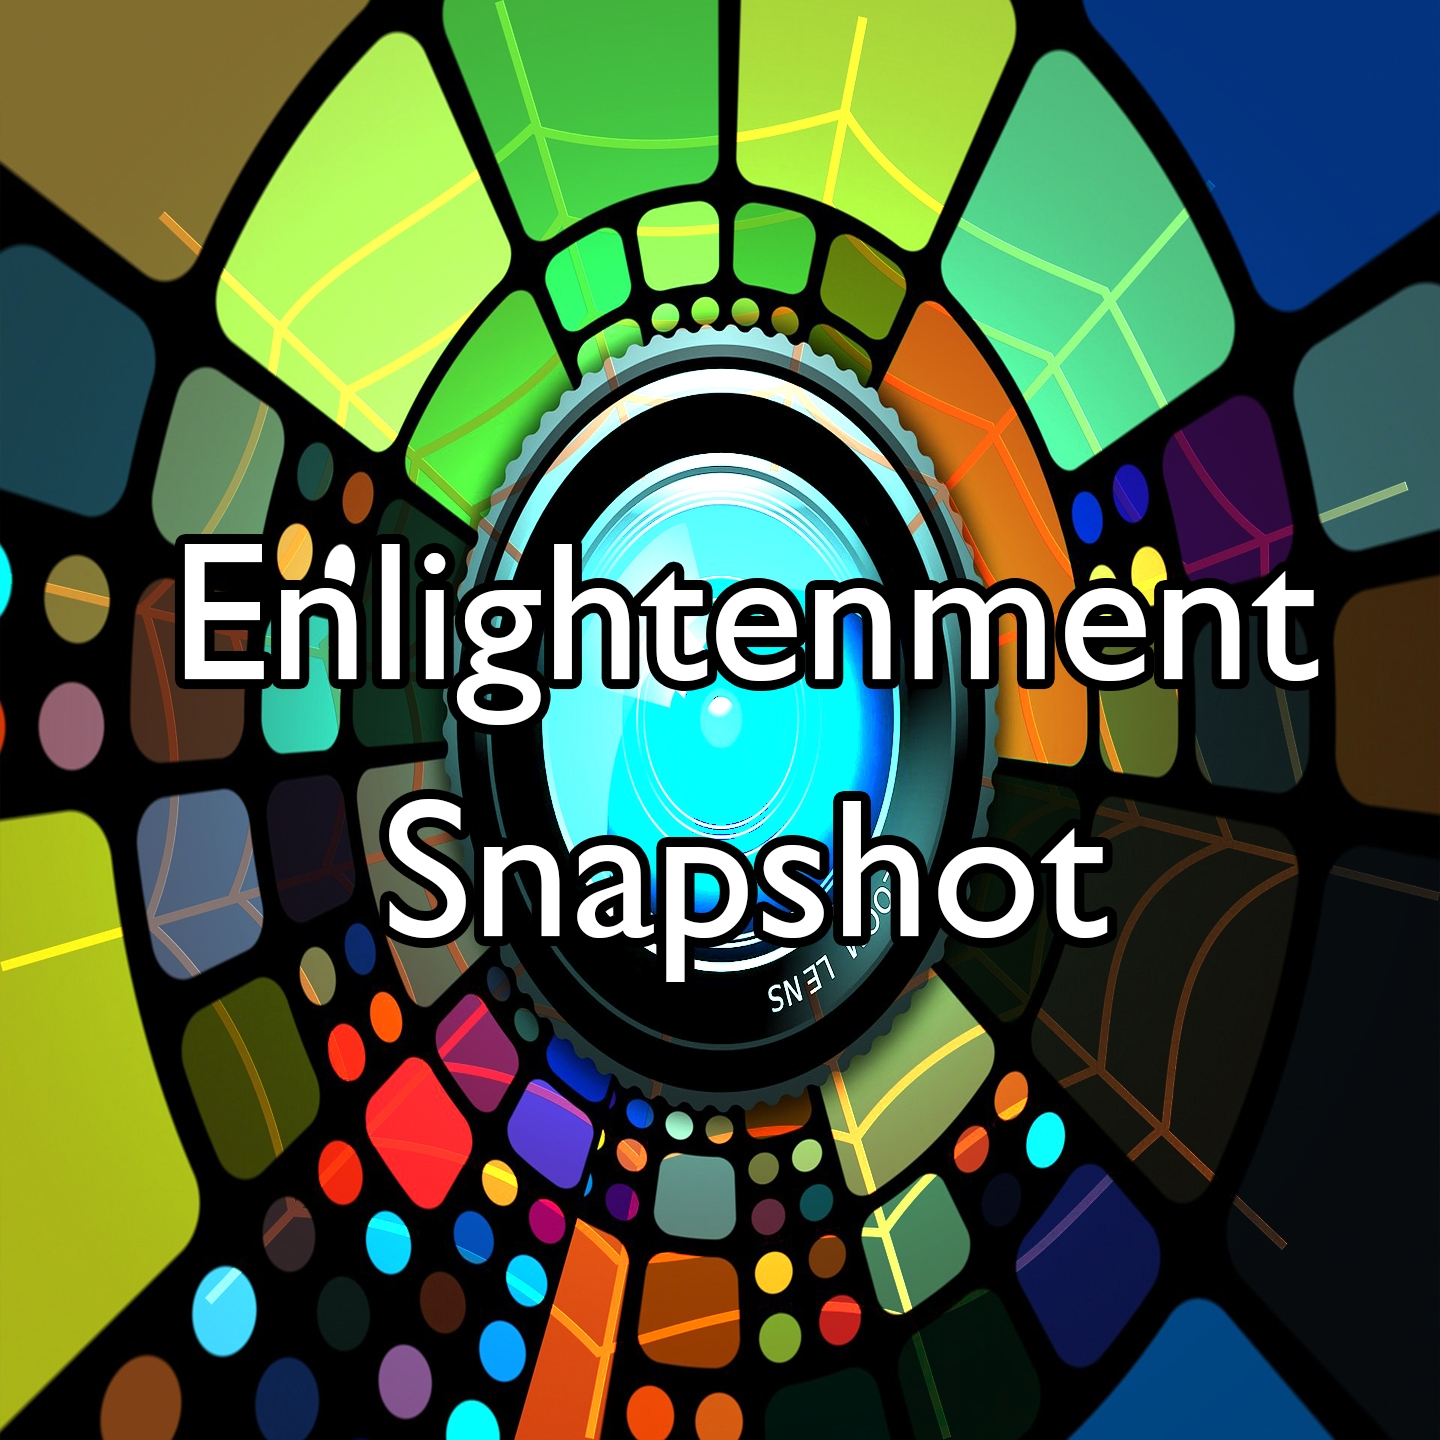 Enlightenment Snapshot